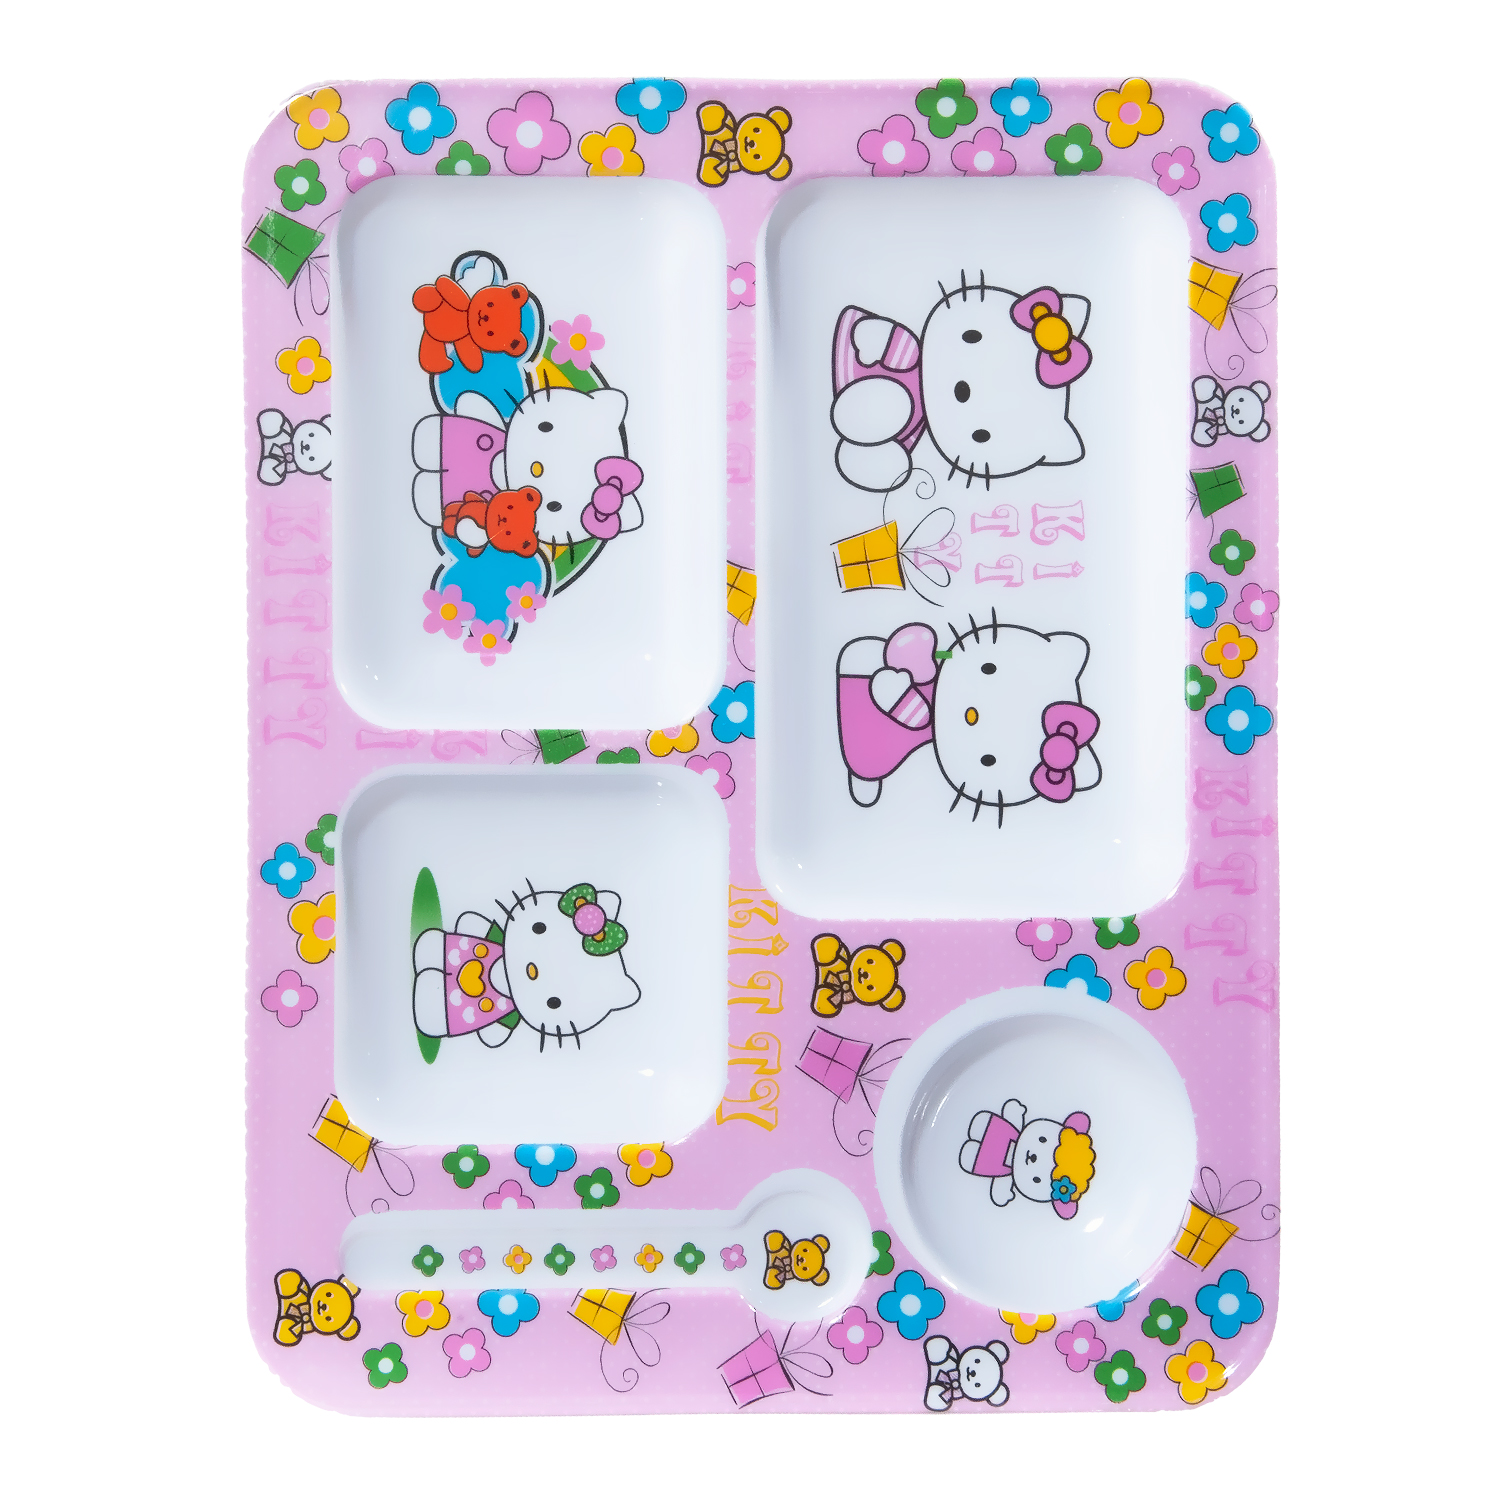 نقد و بررسی ظرف غذای کودک طرح Hello Kitty مدل 398 توسط خریداران